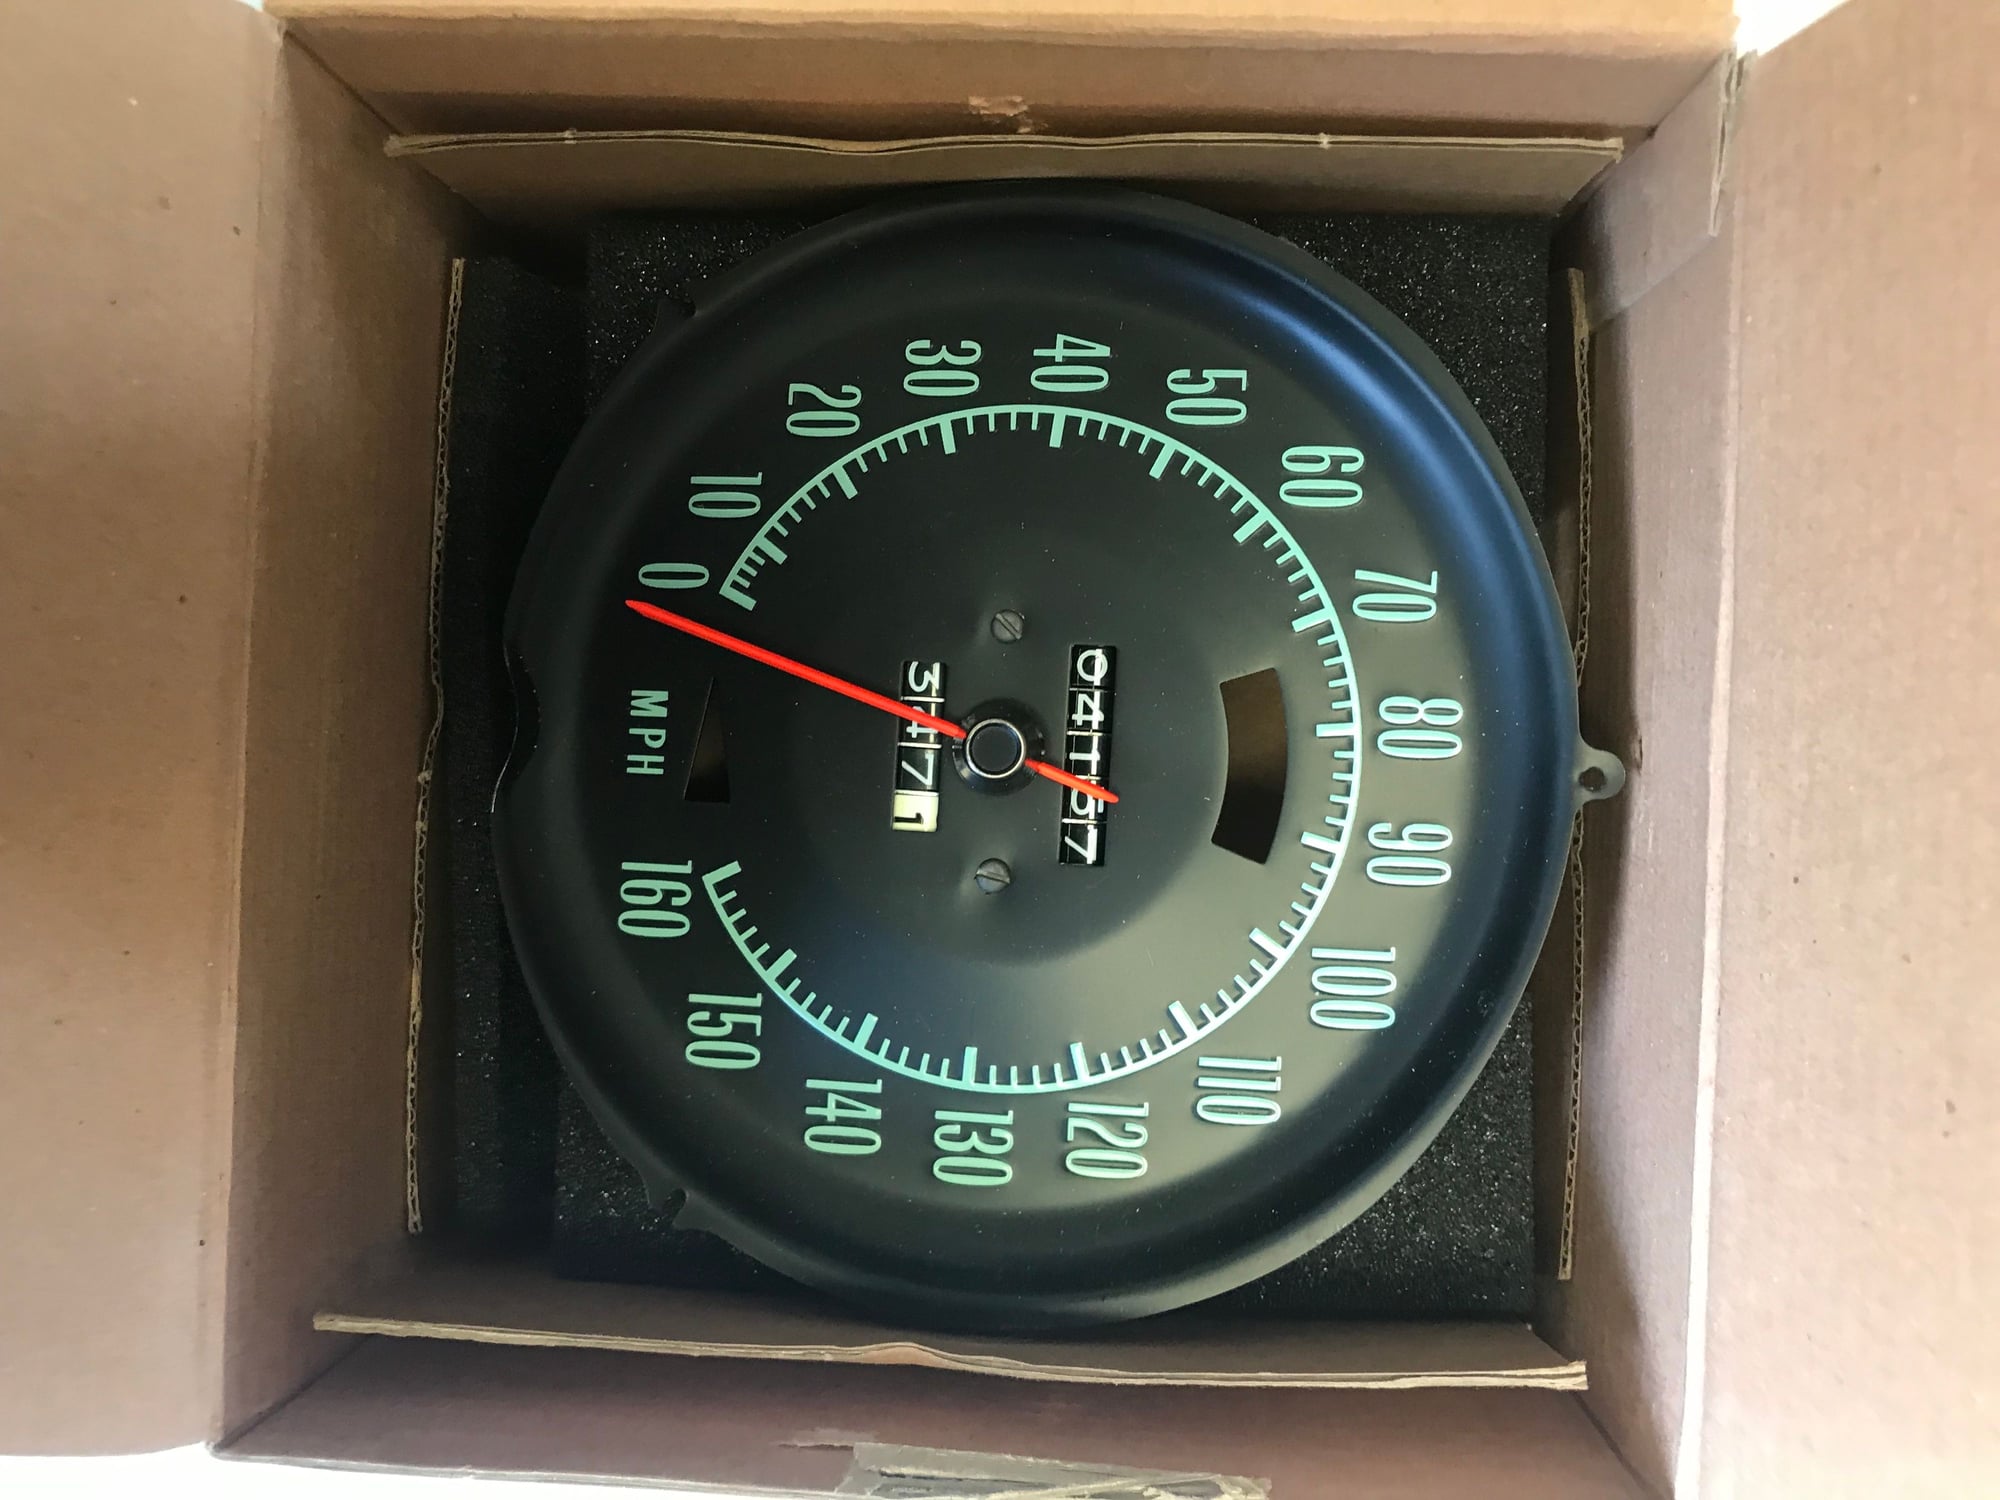 FS (For Sale) 68 speedometer Like new 416 Miles - CorvetteForum ...